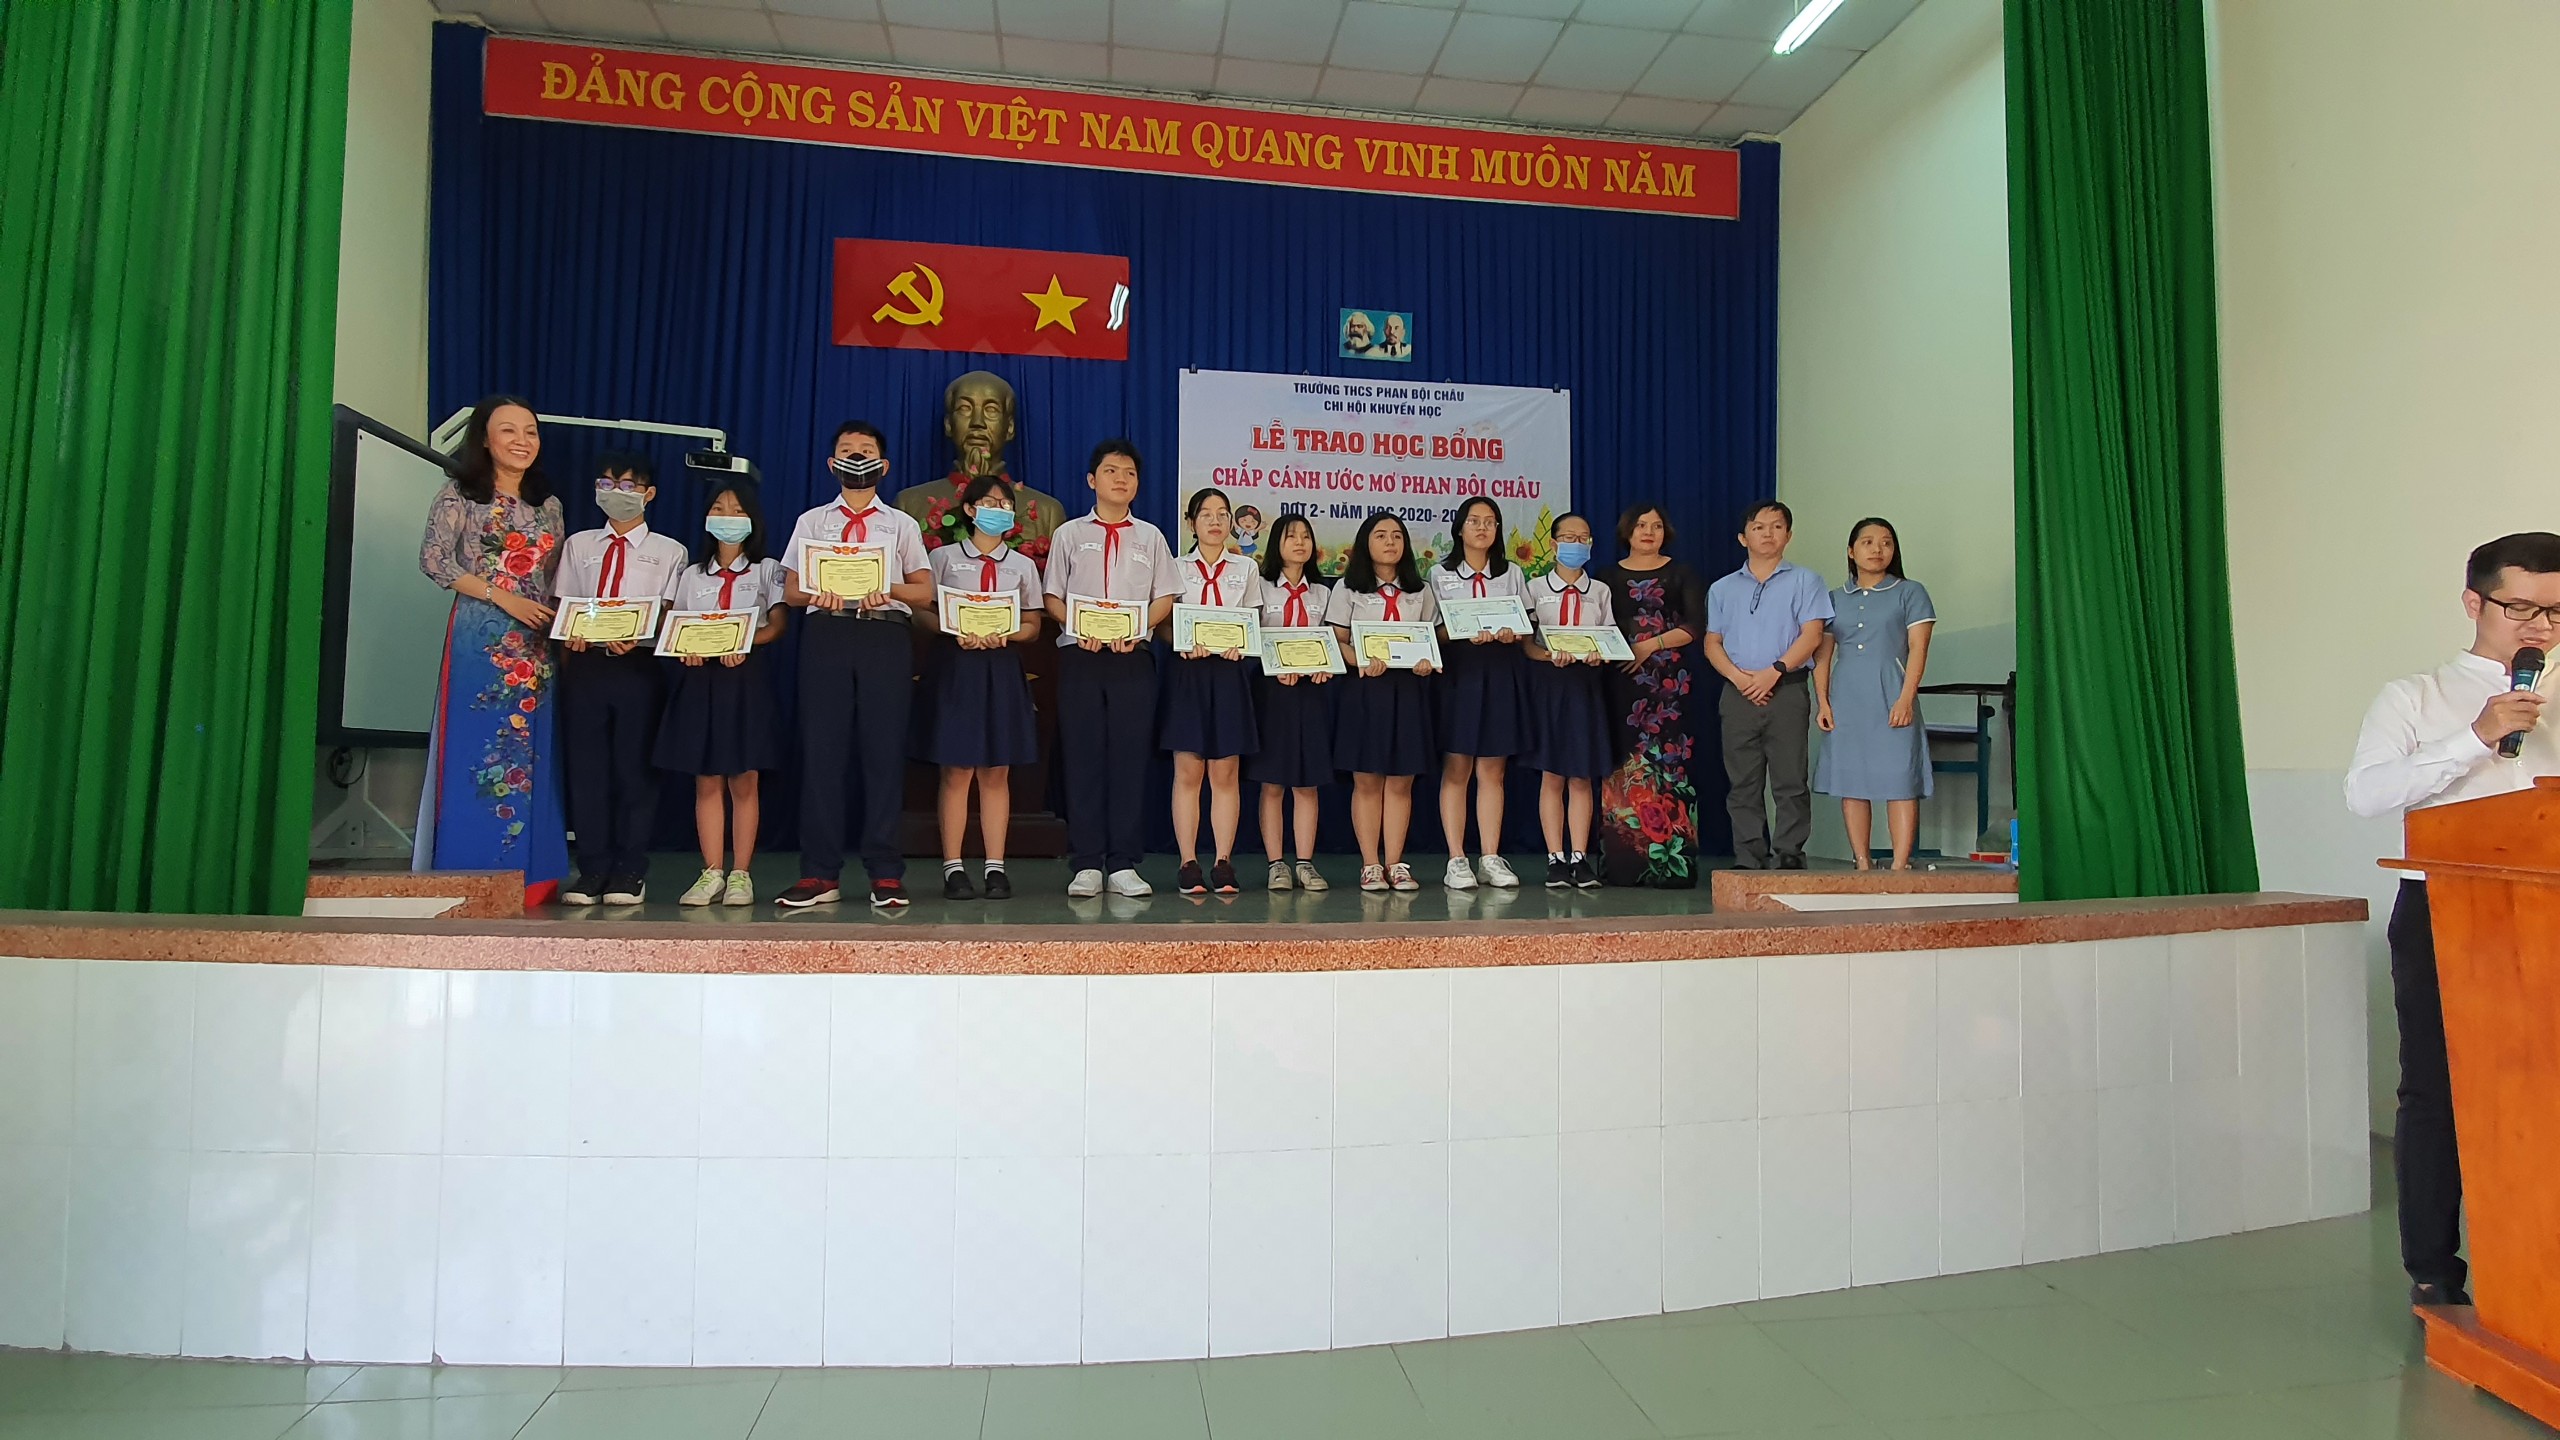 Students receive certificates of merit in the auditorium